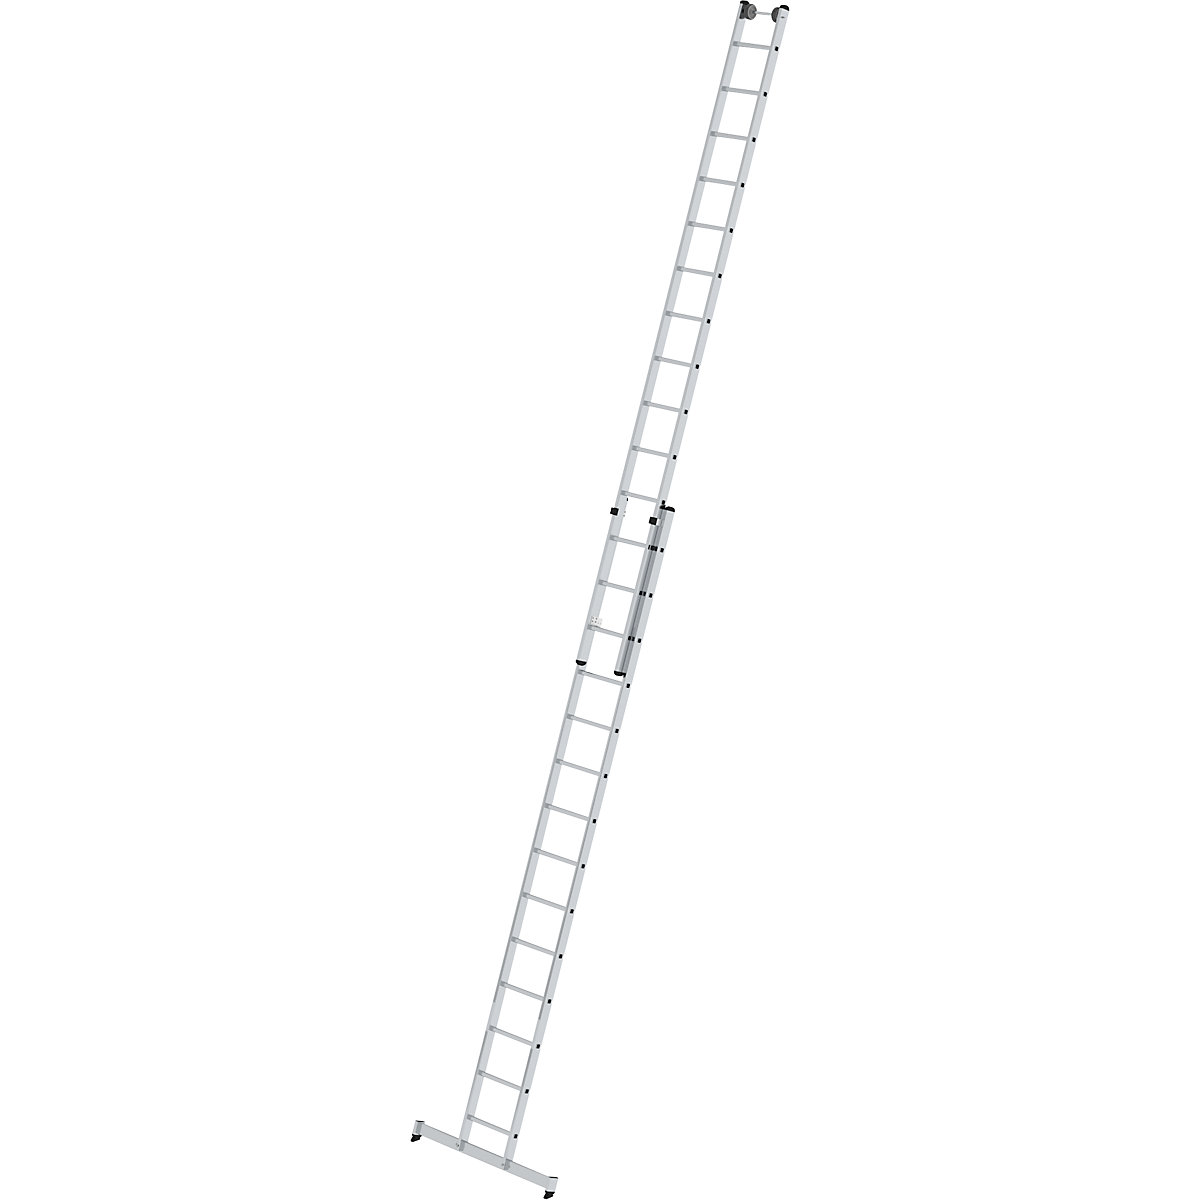 Escalera de mano de altura regulable – MUNK, escalera extensible de 2 tramos, 2 x 14 peldaños estrechos, con traviesa nivello®-6